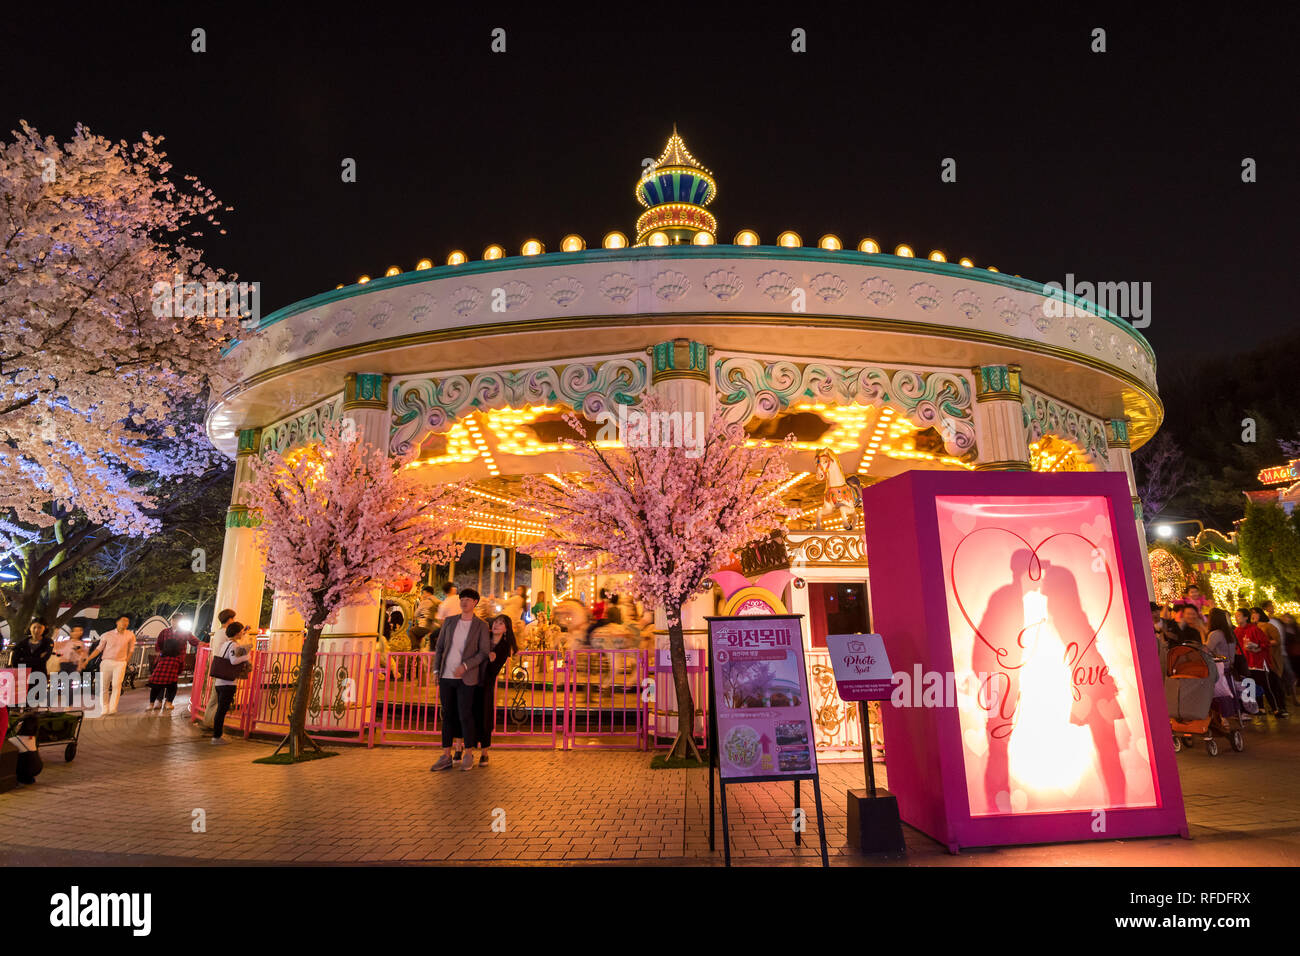 Vue de nuit E-World theme park et 83 dans la tour de Seoul. Banque D'Images